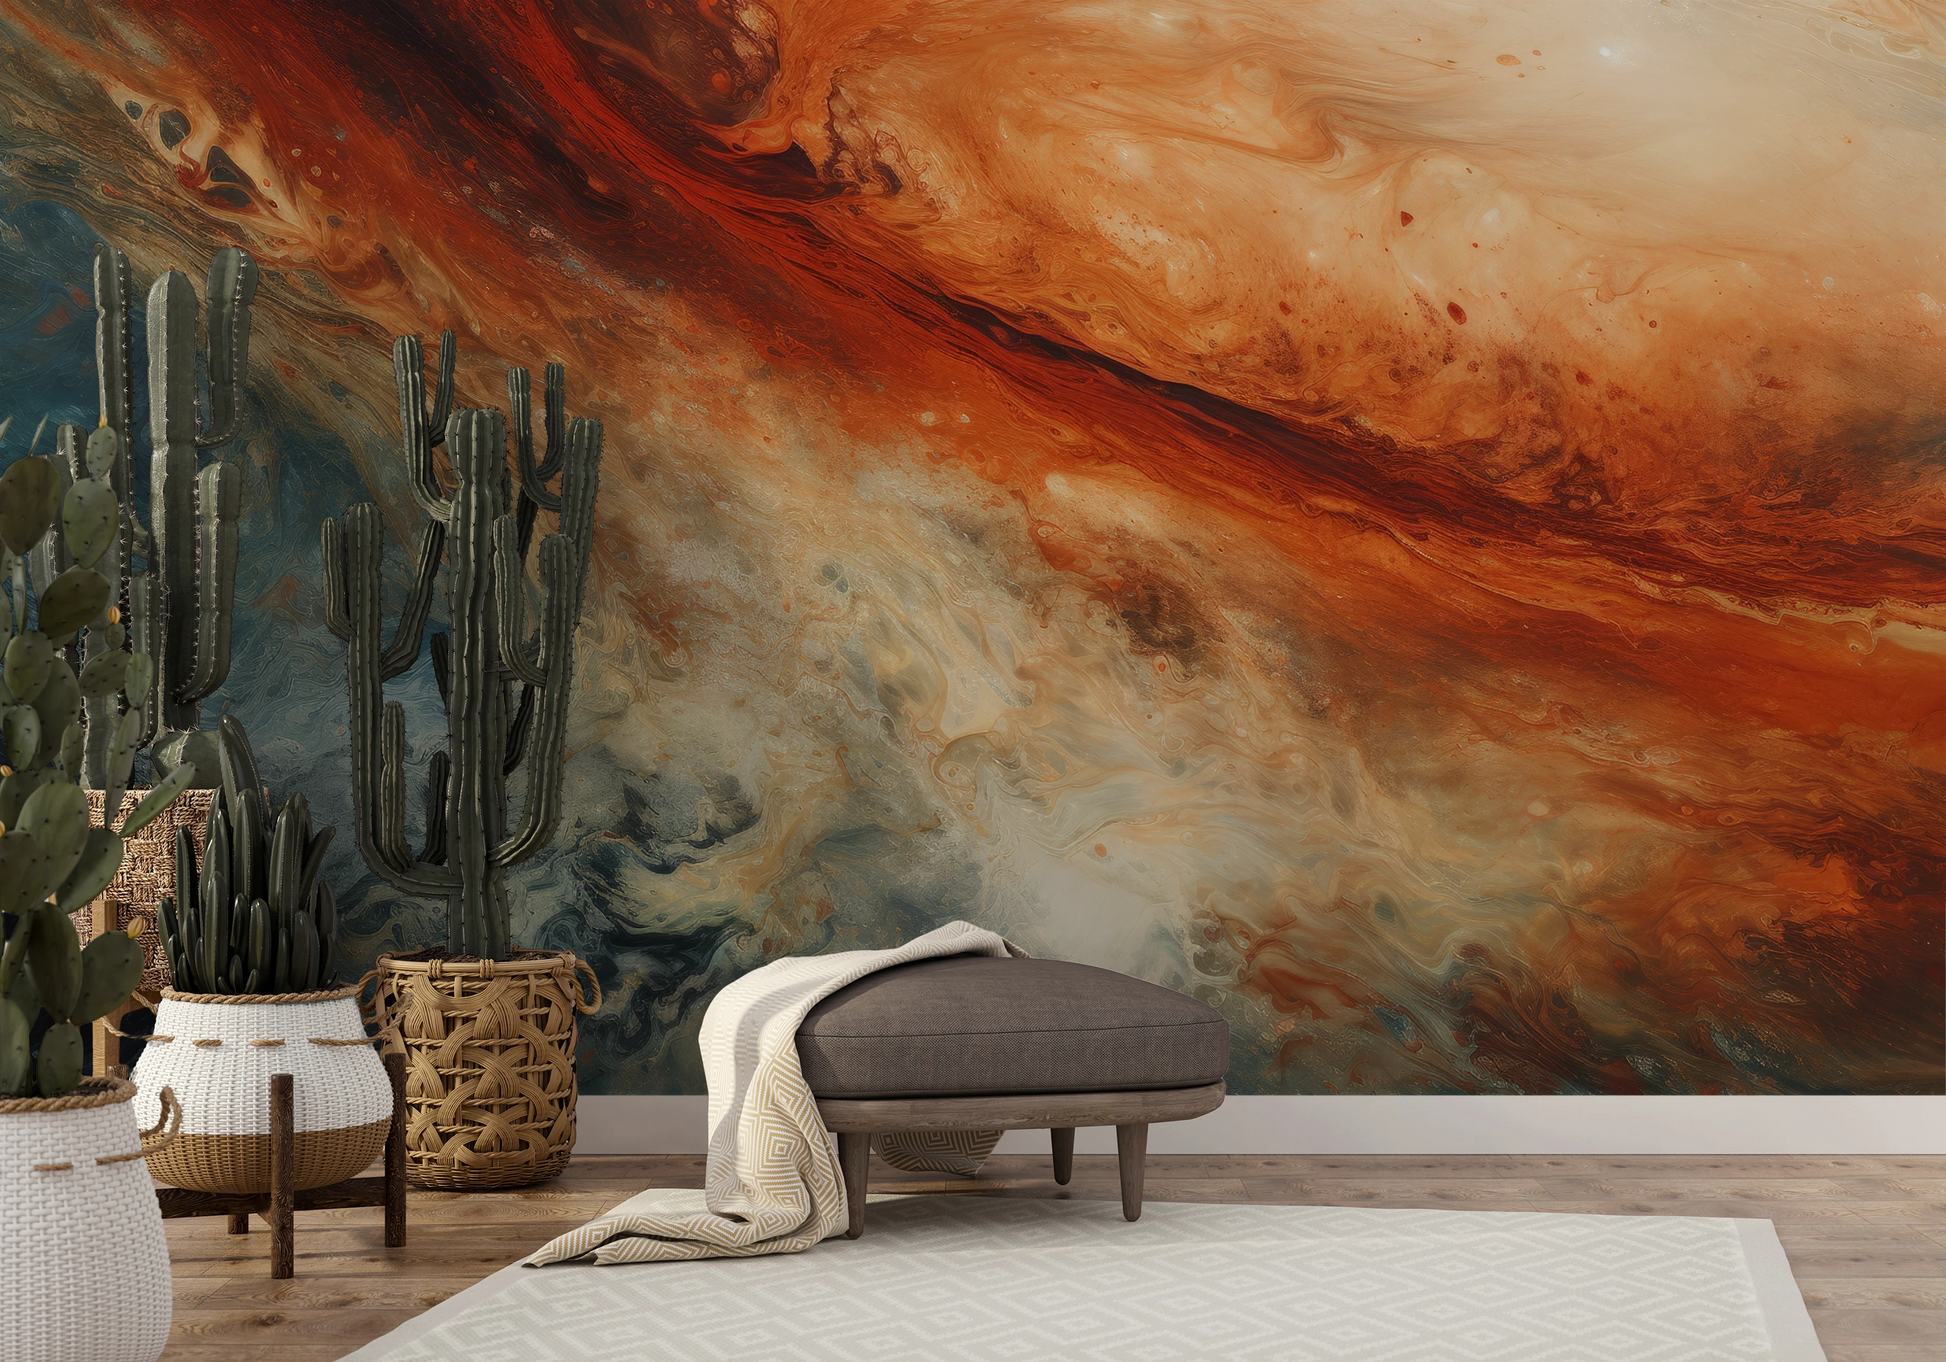 Wzór fototapety artystycznej o nazwie Jupiter's Storm pokazanej w aranżacji wnętrza.